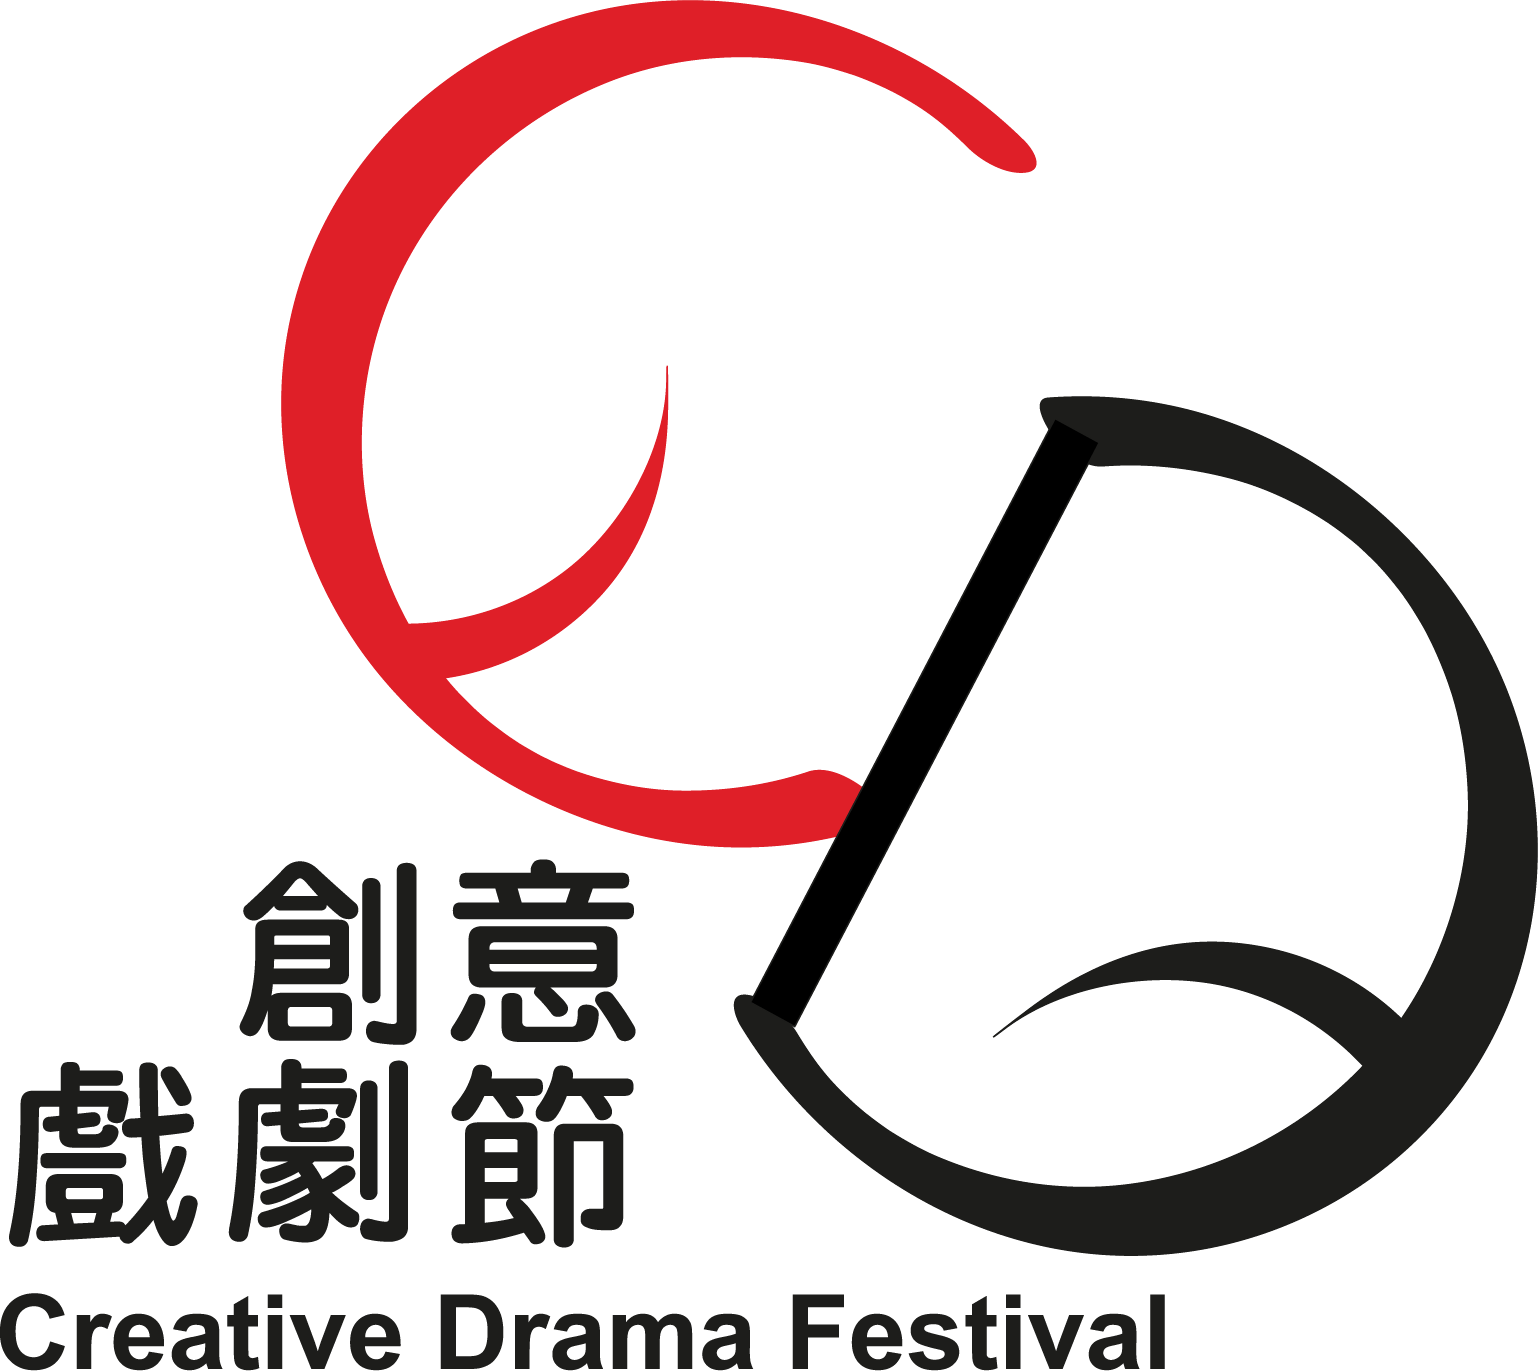 Hong Kong Creative Drama Festival